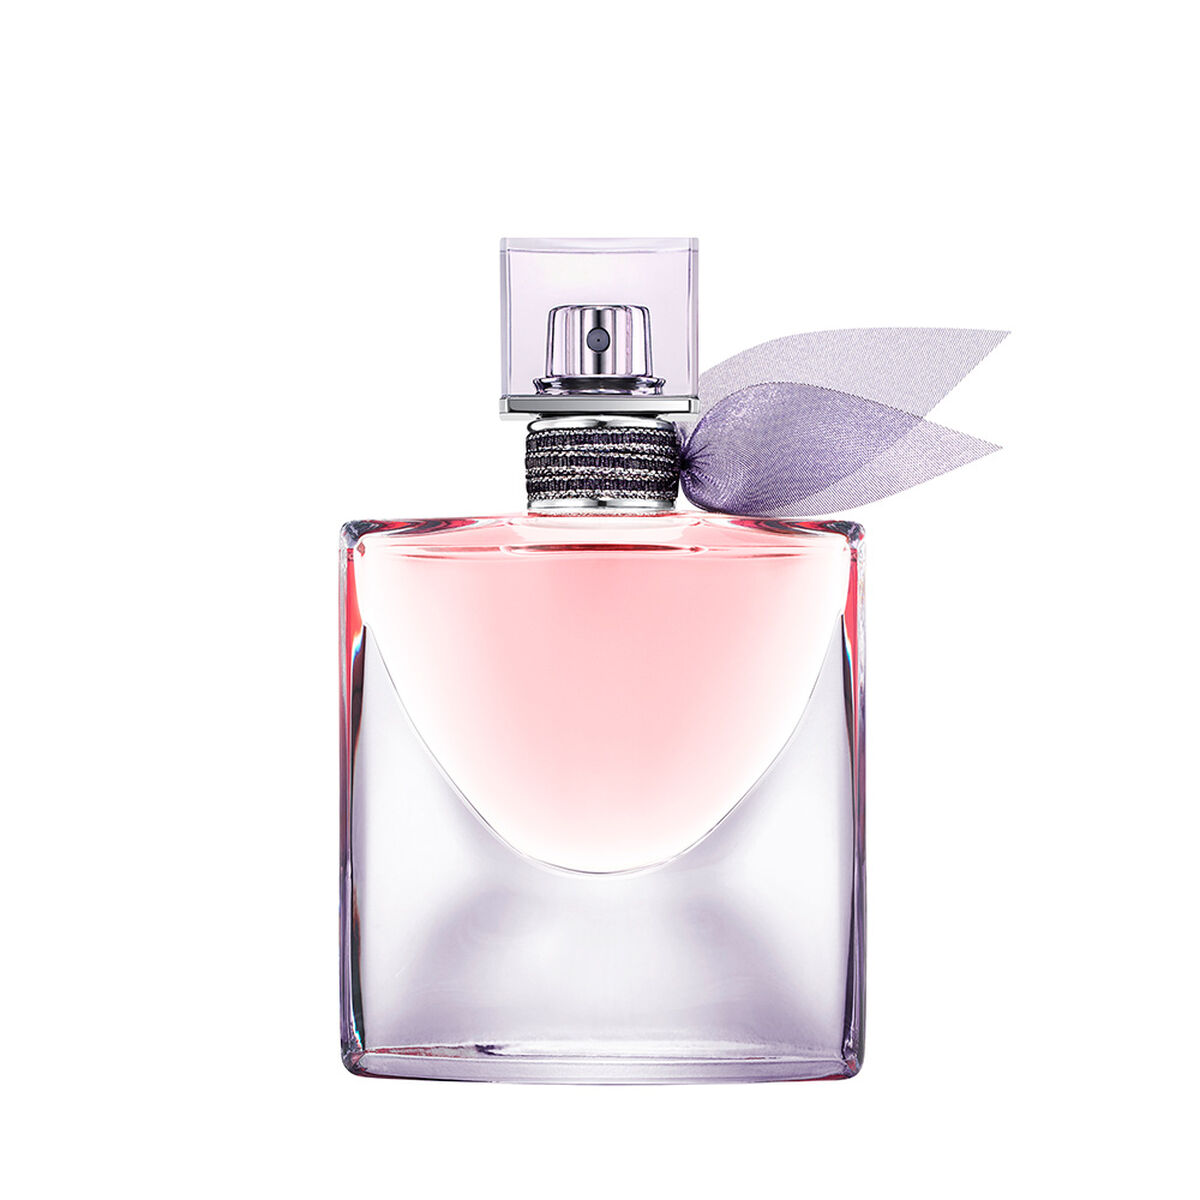 Perfume La Vie Est Belle Intense 30 ml Edición Limitada Lancome